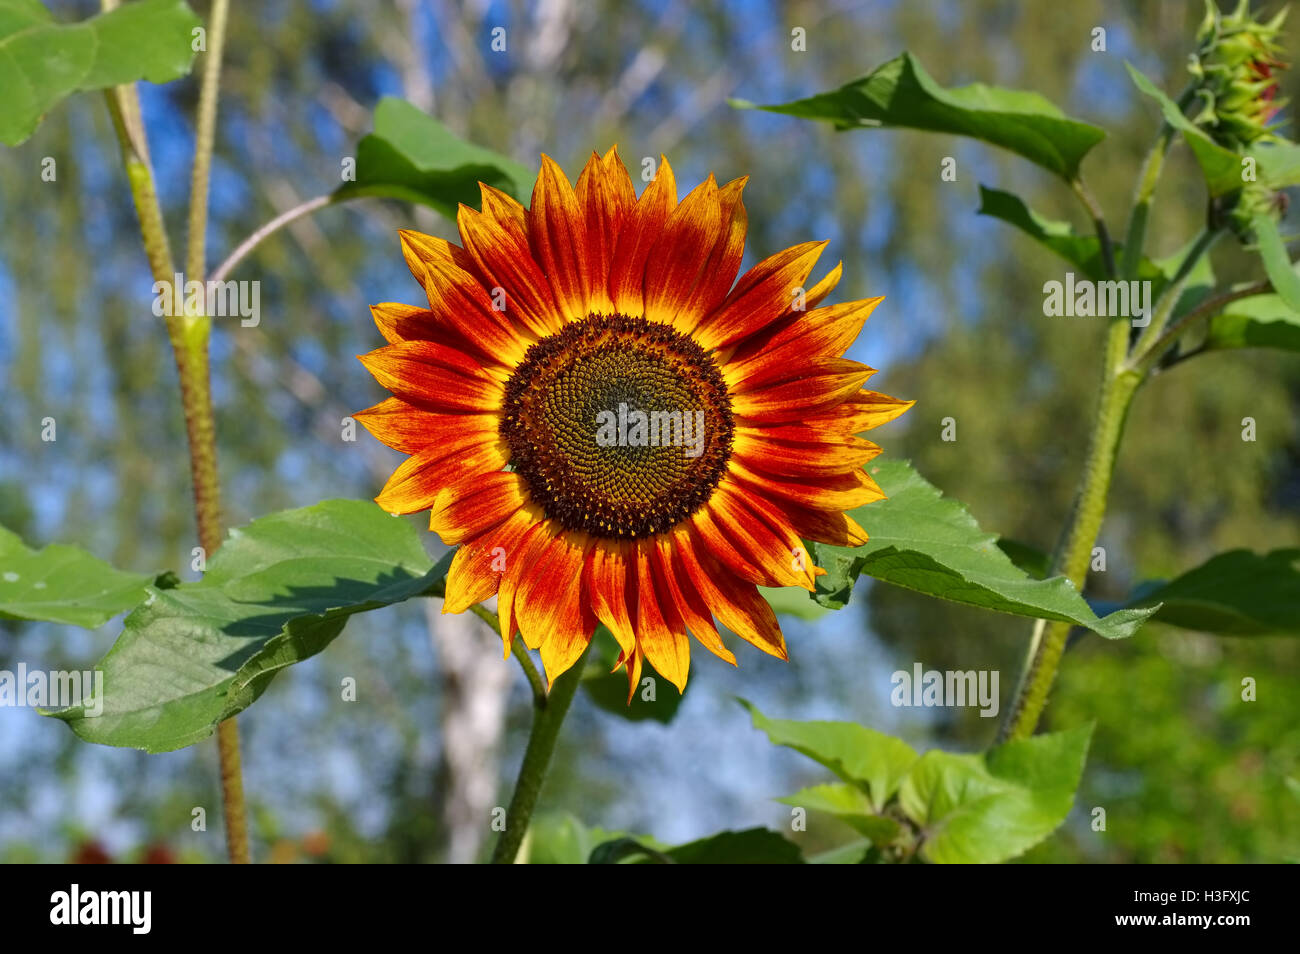 einzelne Sonnenblume im Sommer - single sunflower in summer, garden plant Stock Photo